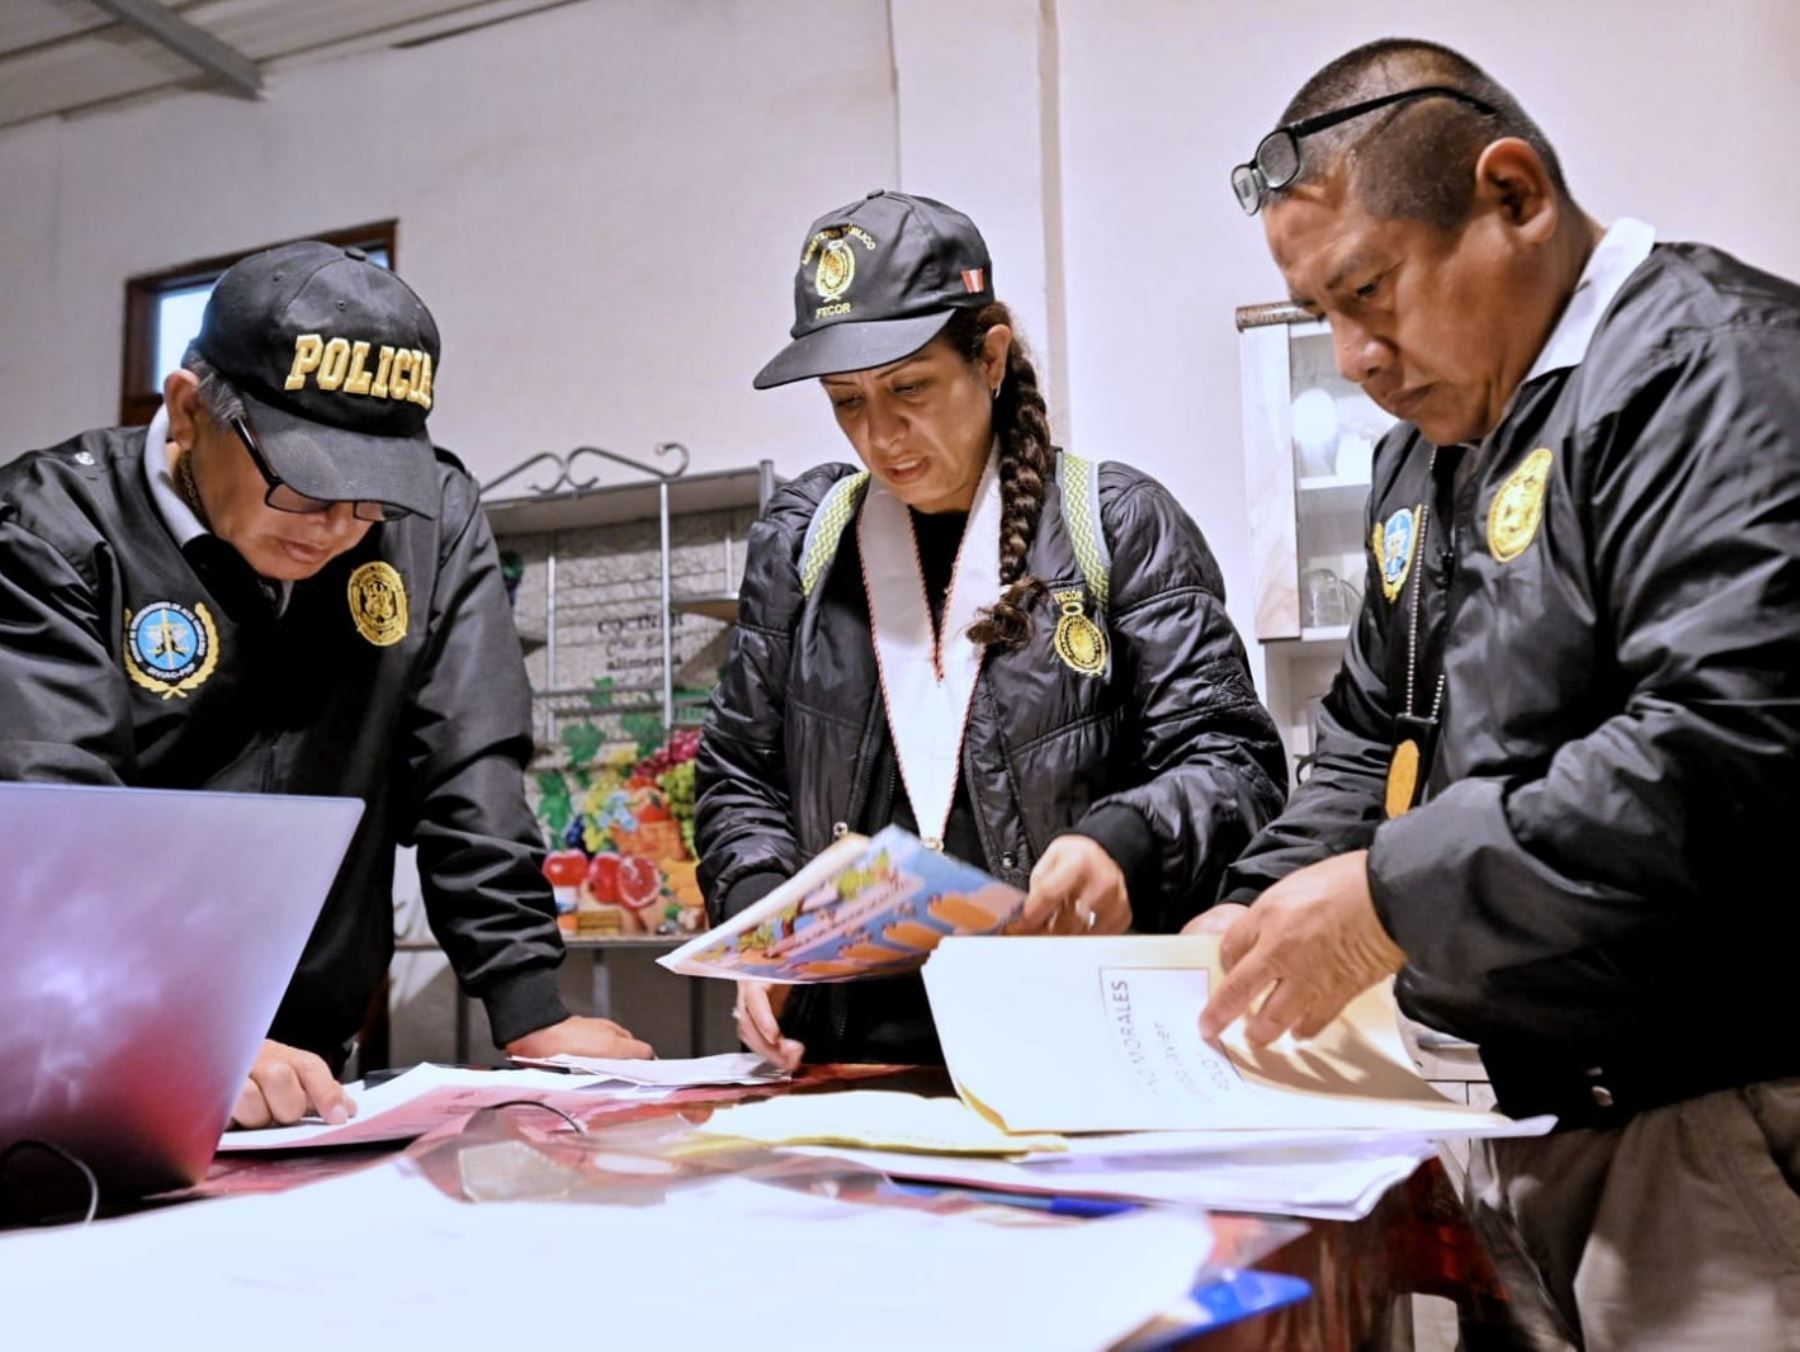 El operativo conjunto se ejecutó en los distritos limeños de El Agustino, Ate Vitarte, Santa Anita y Lurigancho - Chosica. Foto: ANDINA/Difusión